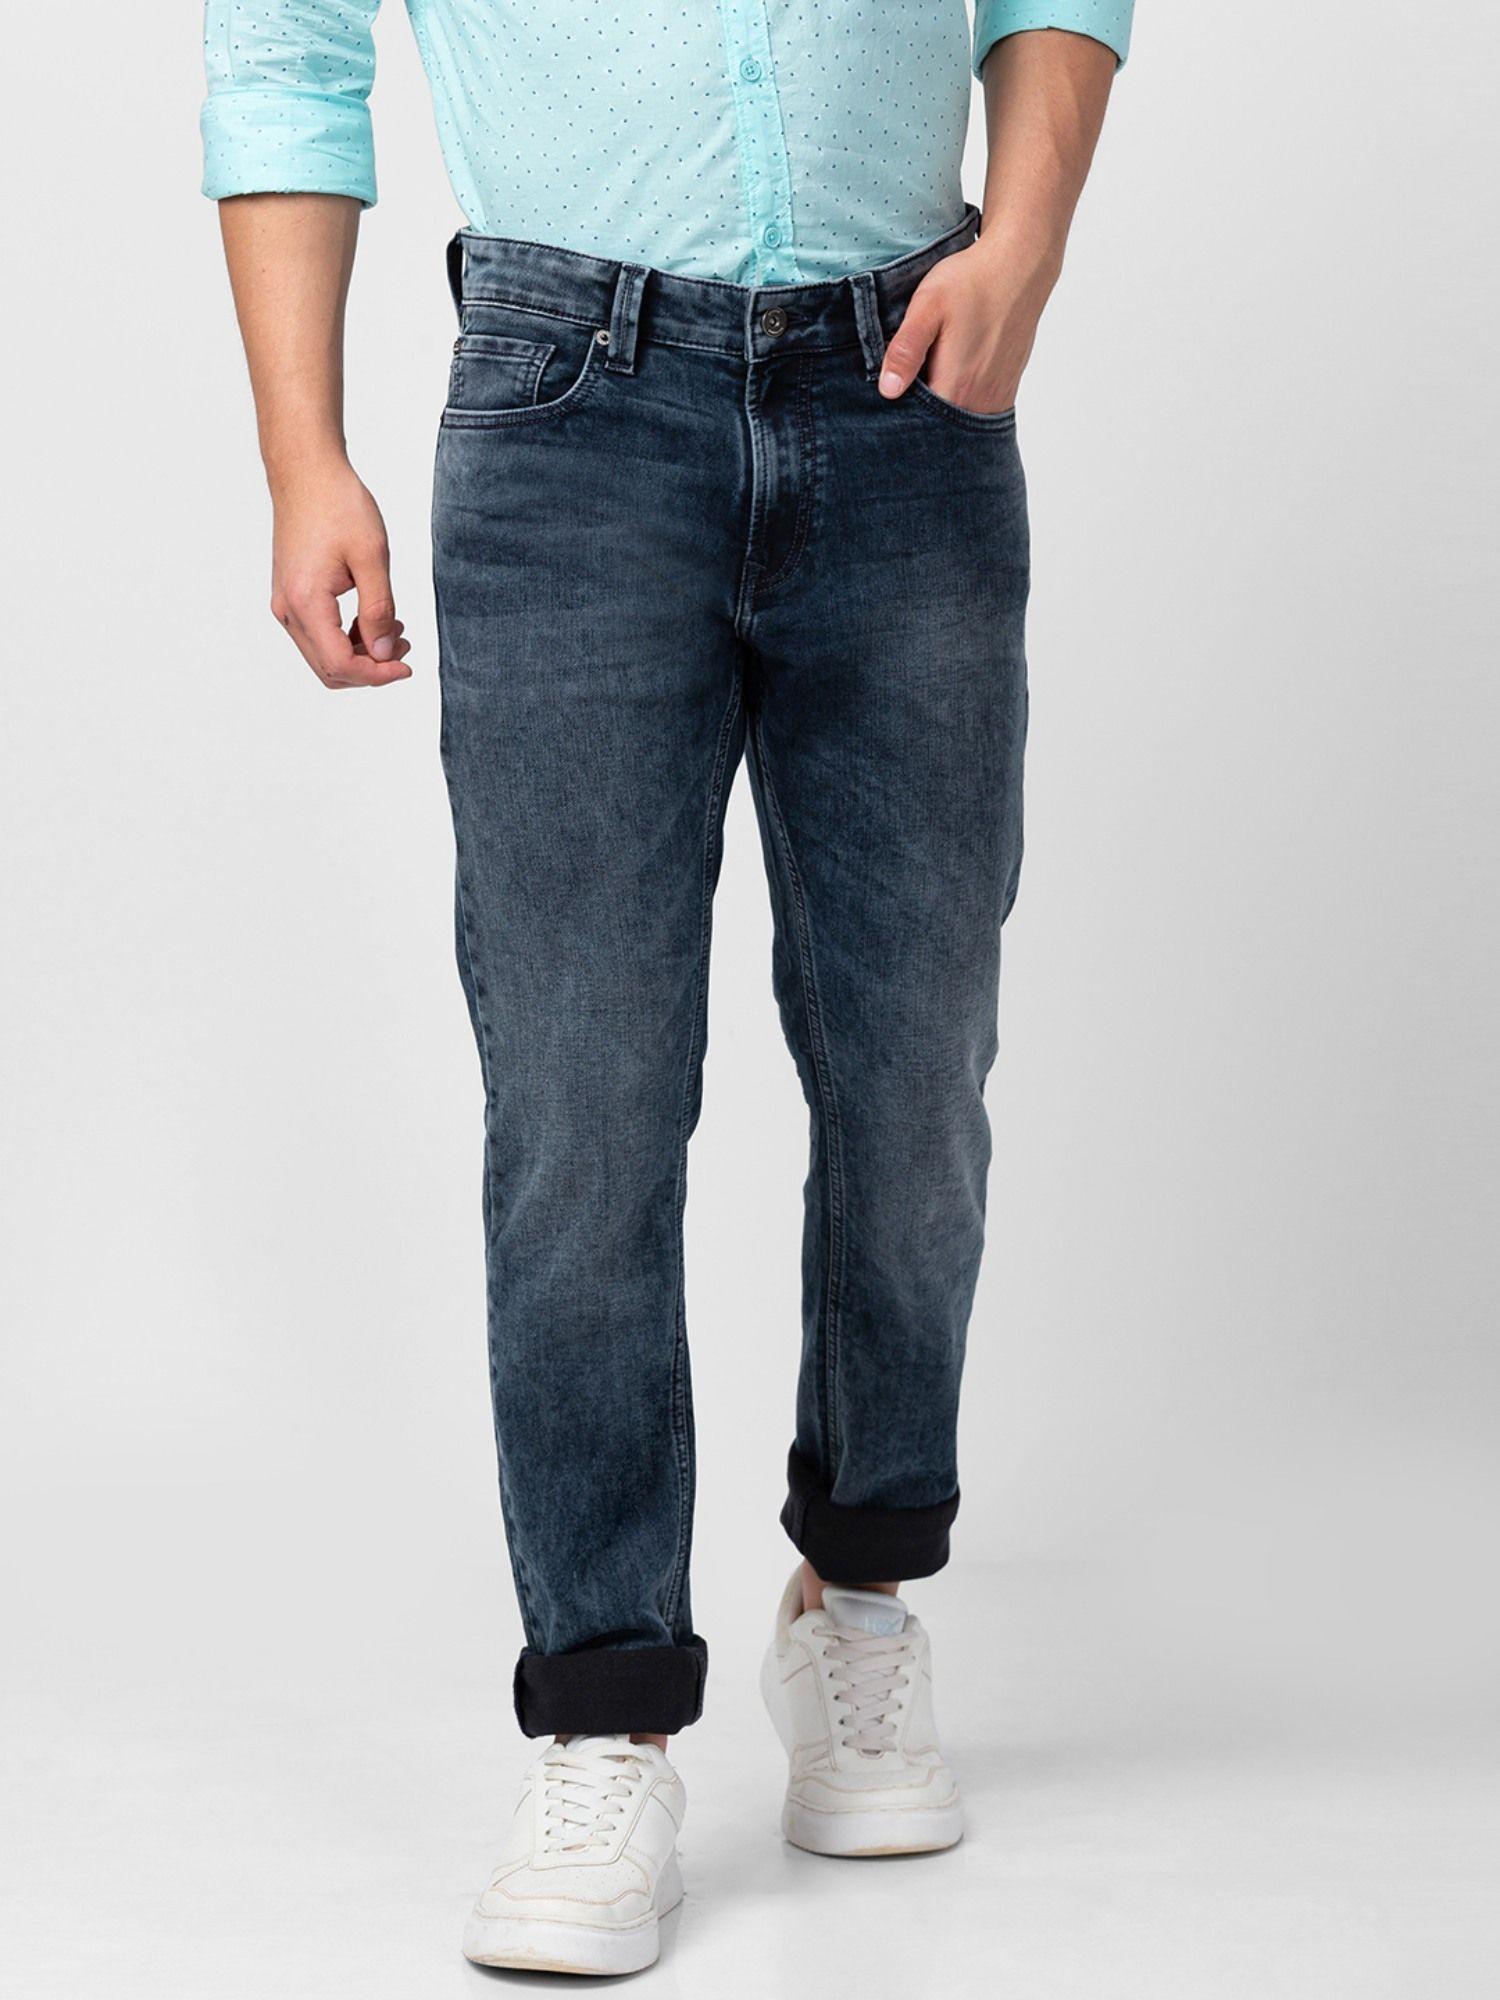 blue low rise slim fit jeans for men